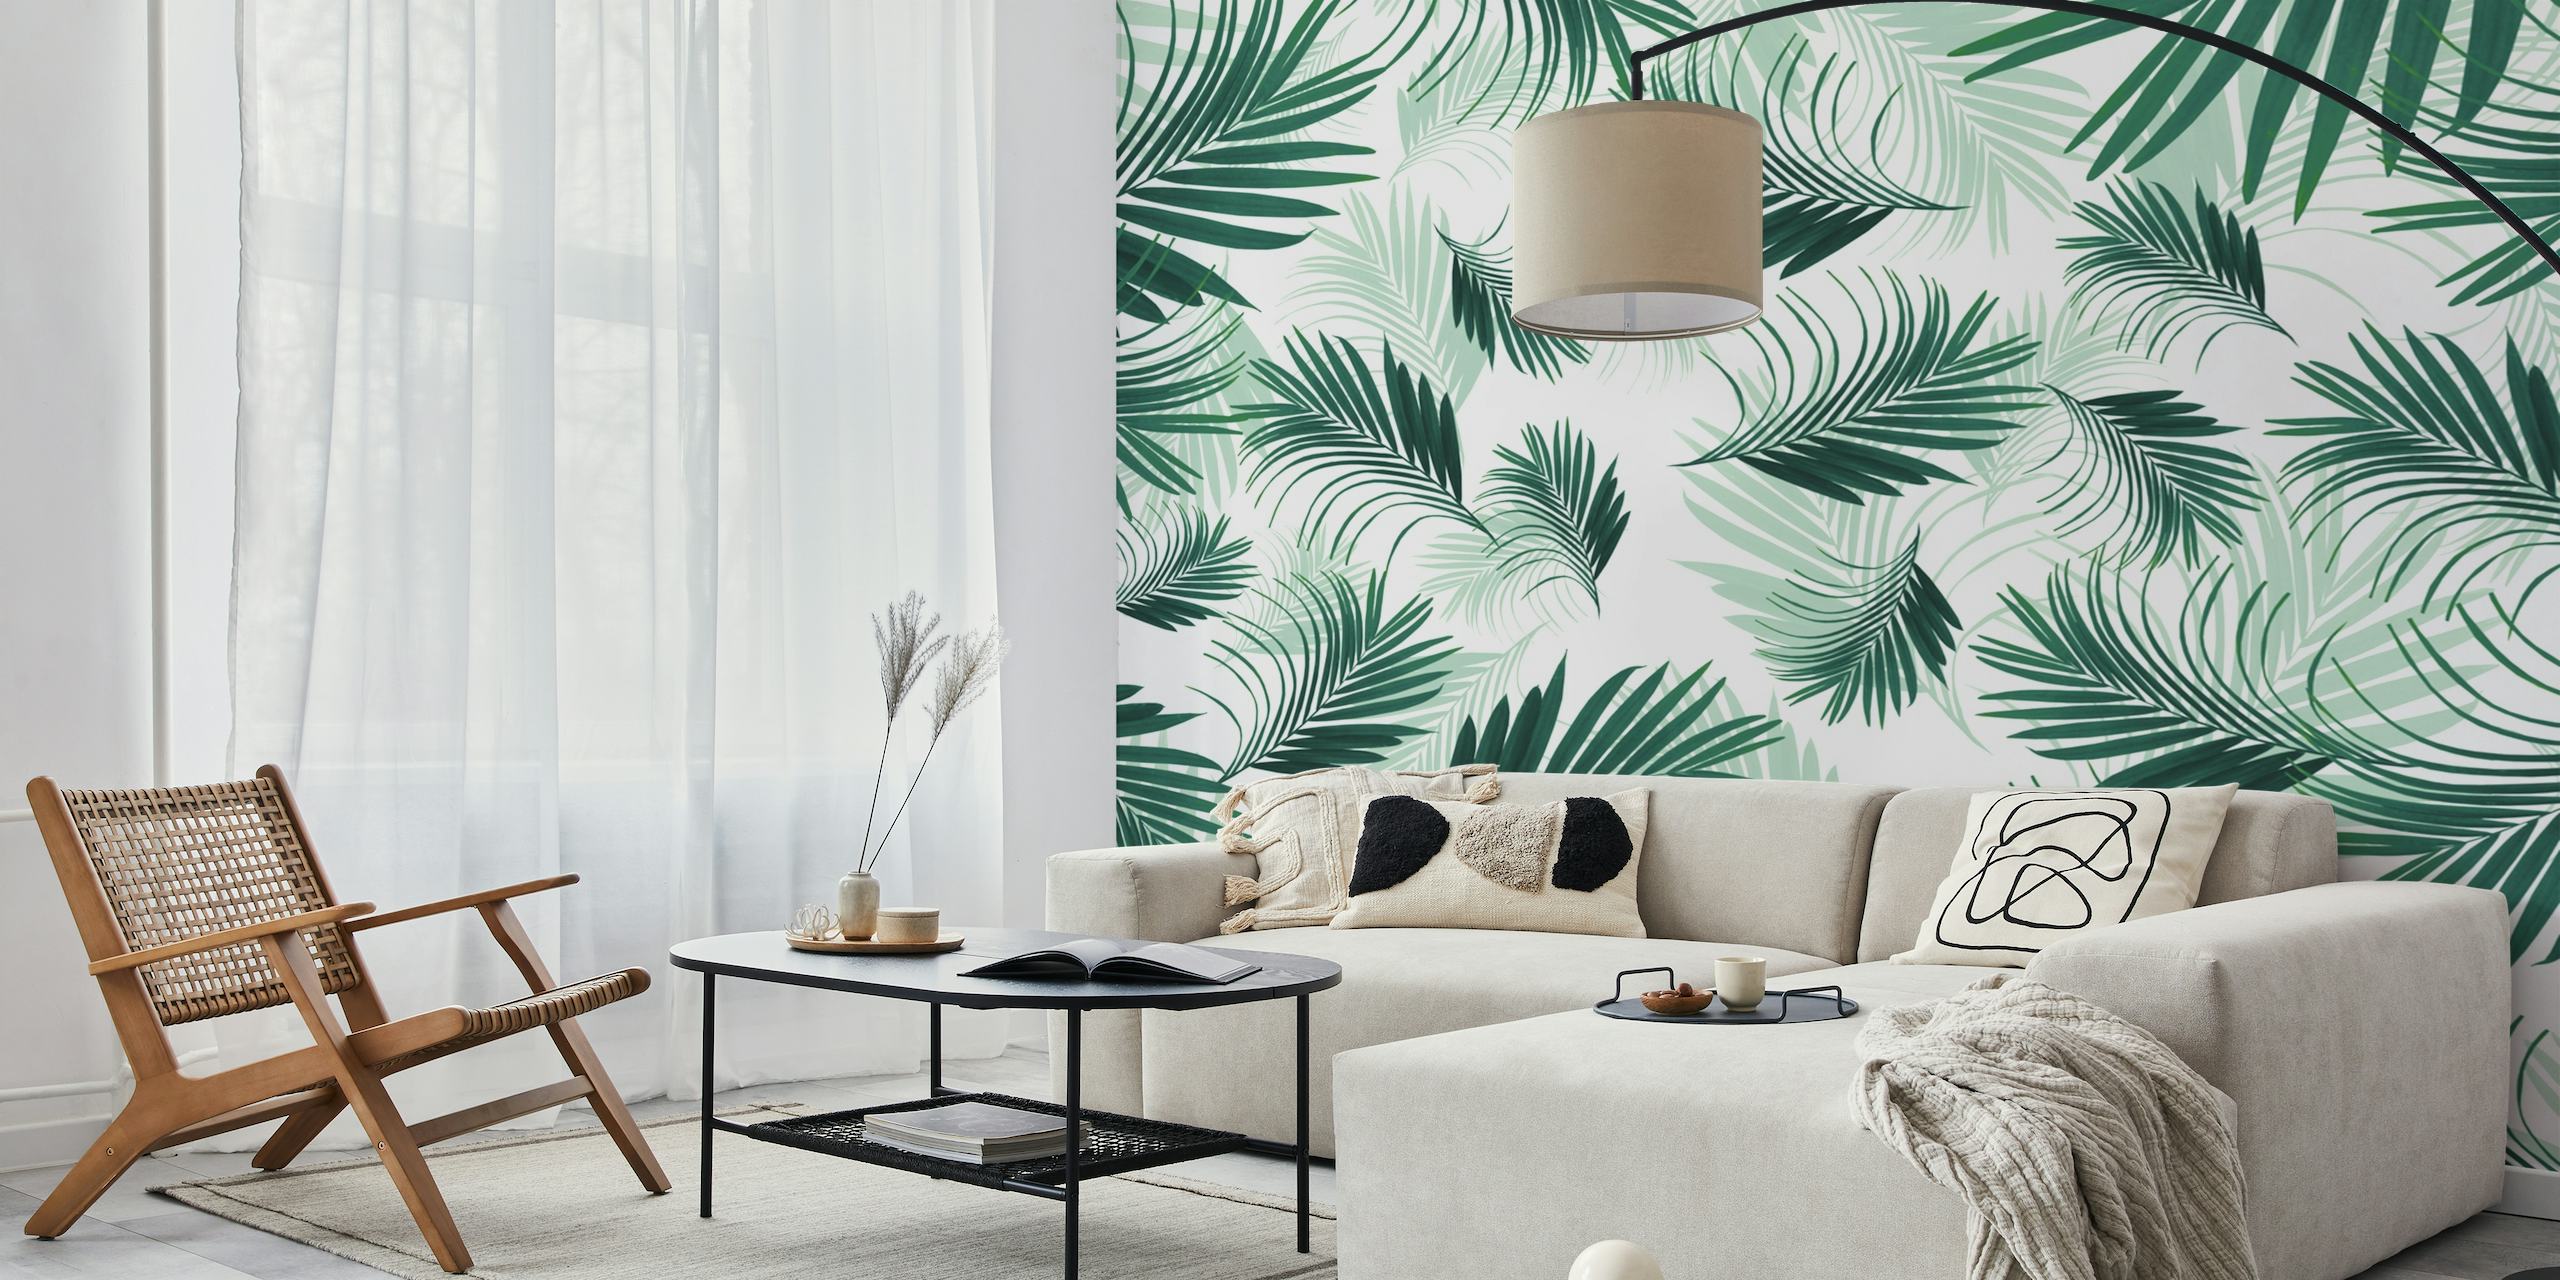 Nálepka s živými tropickými zelenými palmami pro dekoraci inspirovanou přírodou